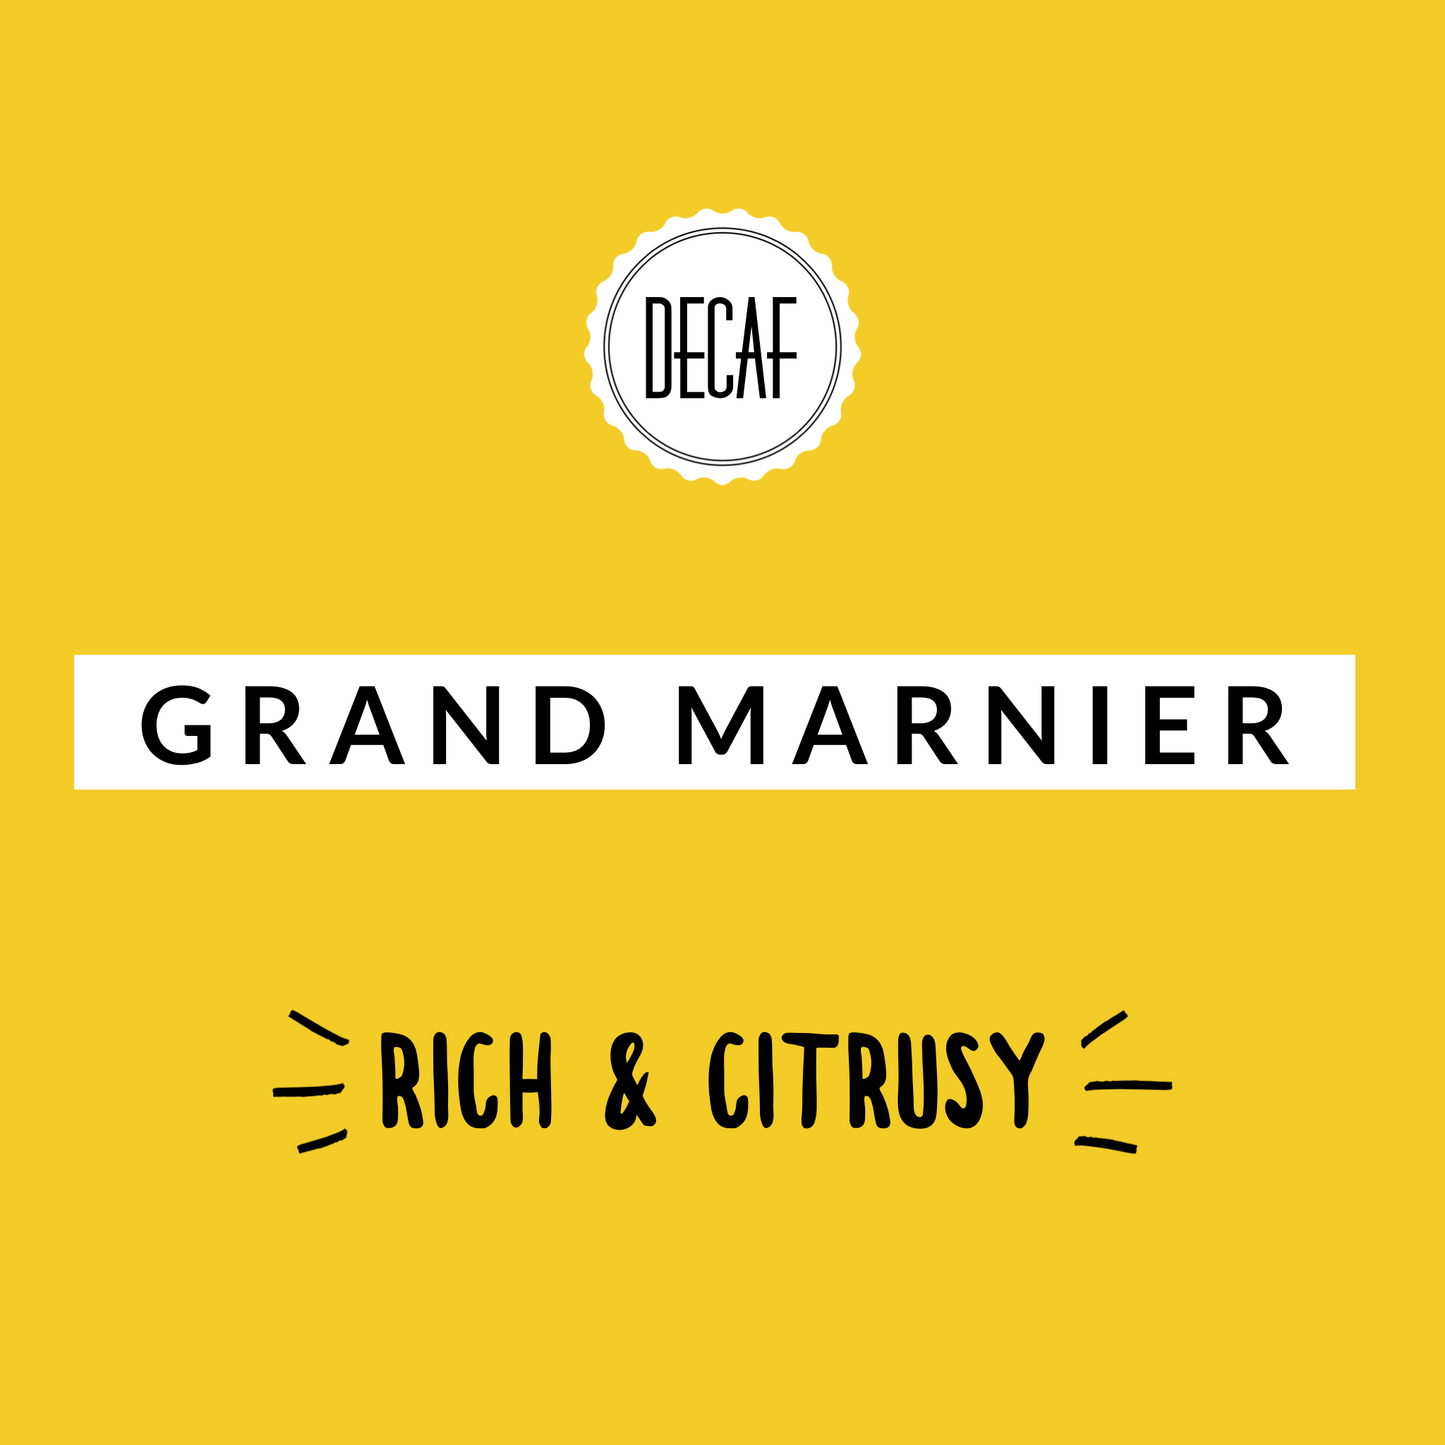 Grand Marnier Decaf